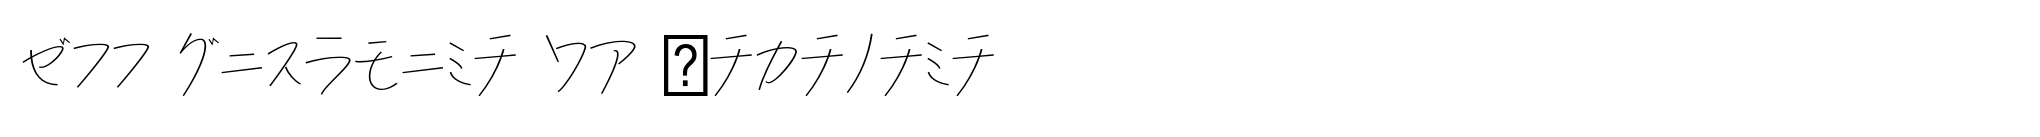 P22 Hiromina 03 Katakana image